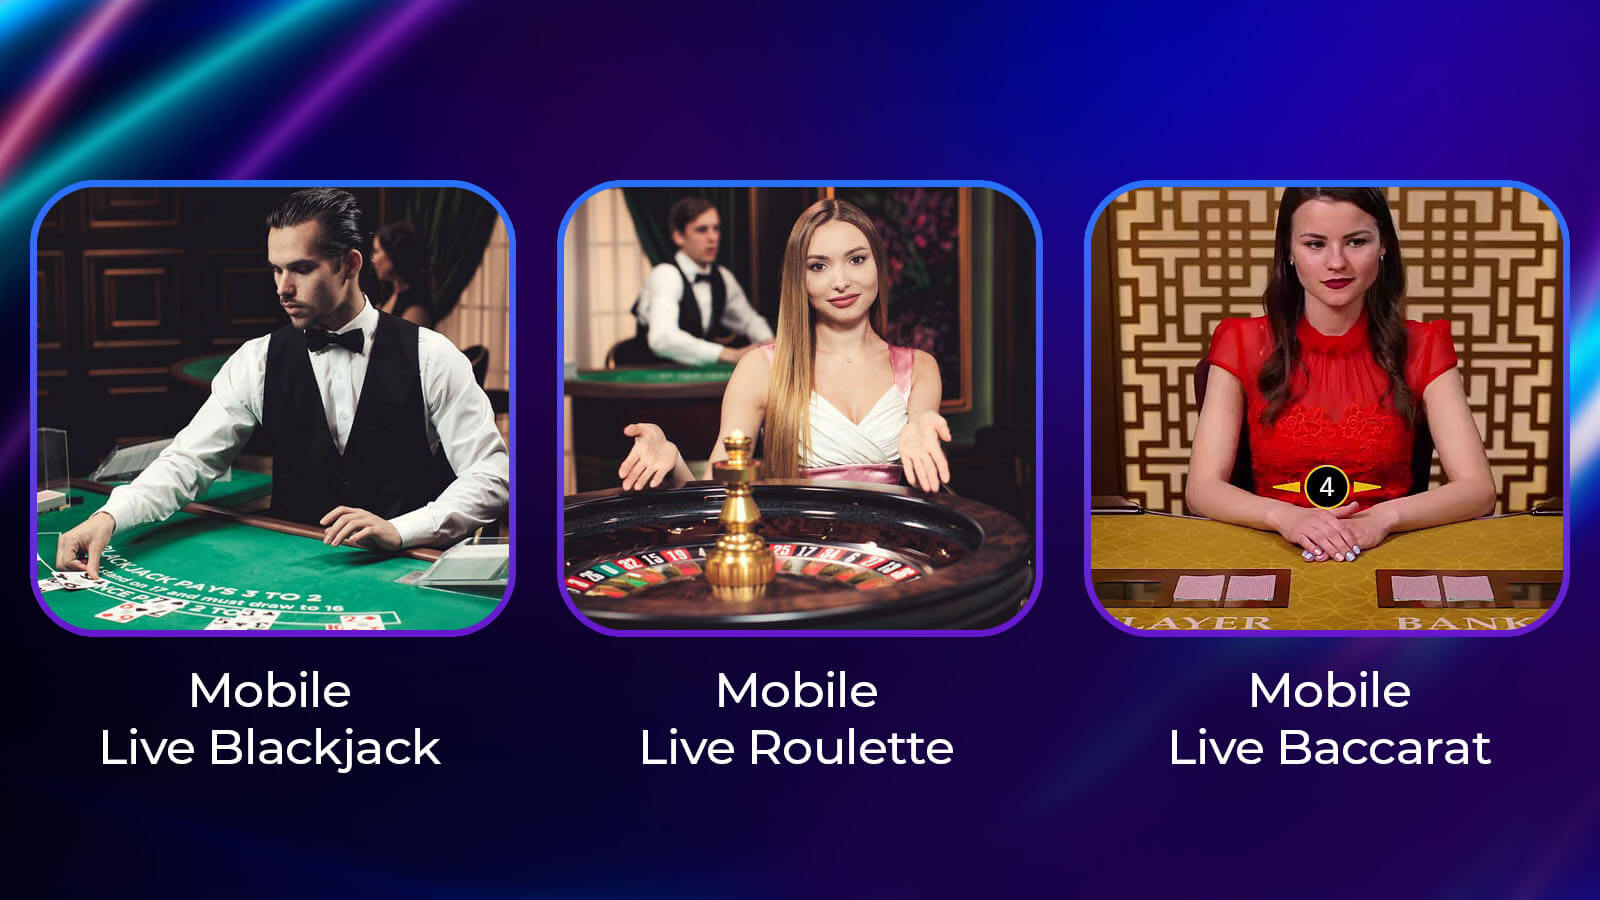 Best Live Dealer Casino Games for Mobile